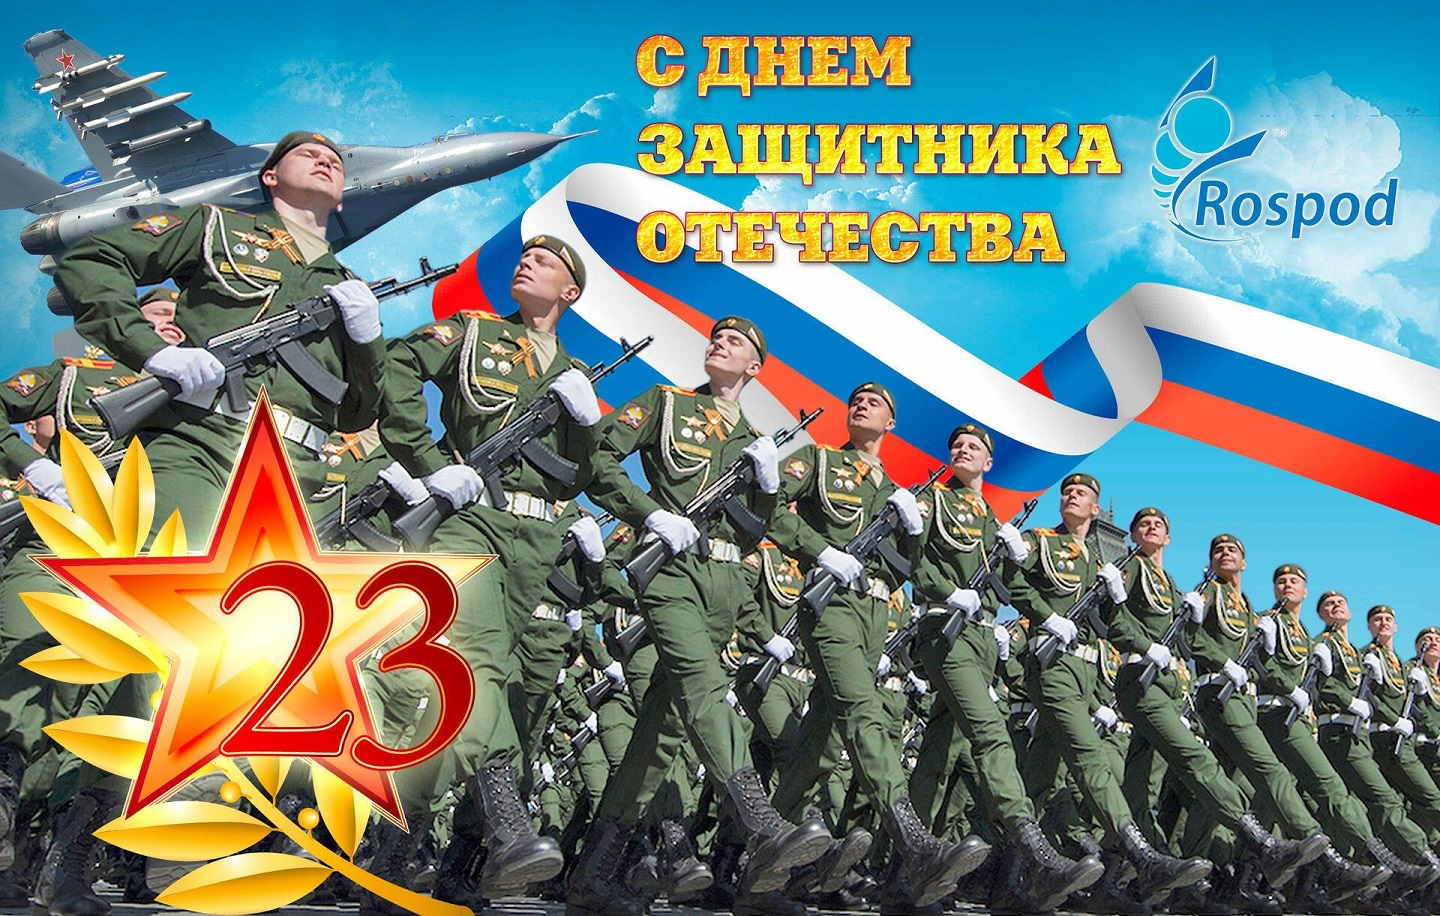 俄罗斯保卫者节的海报